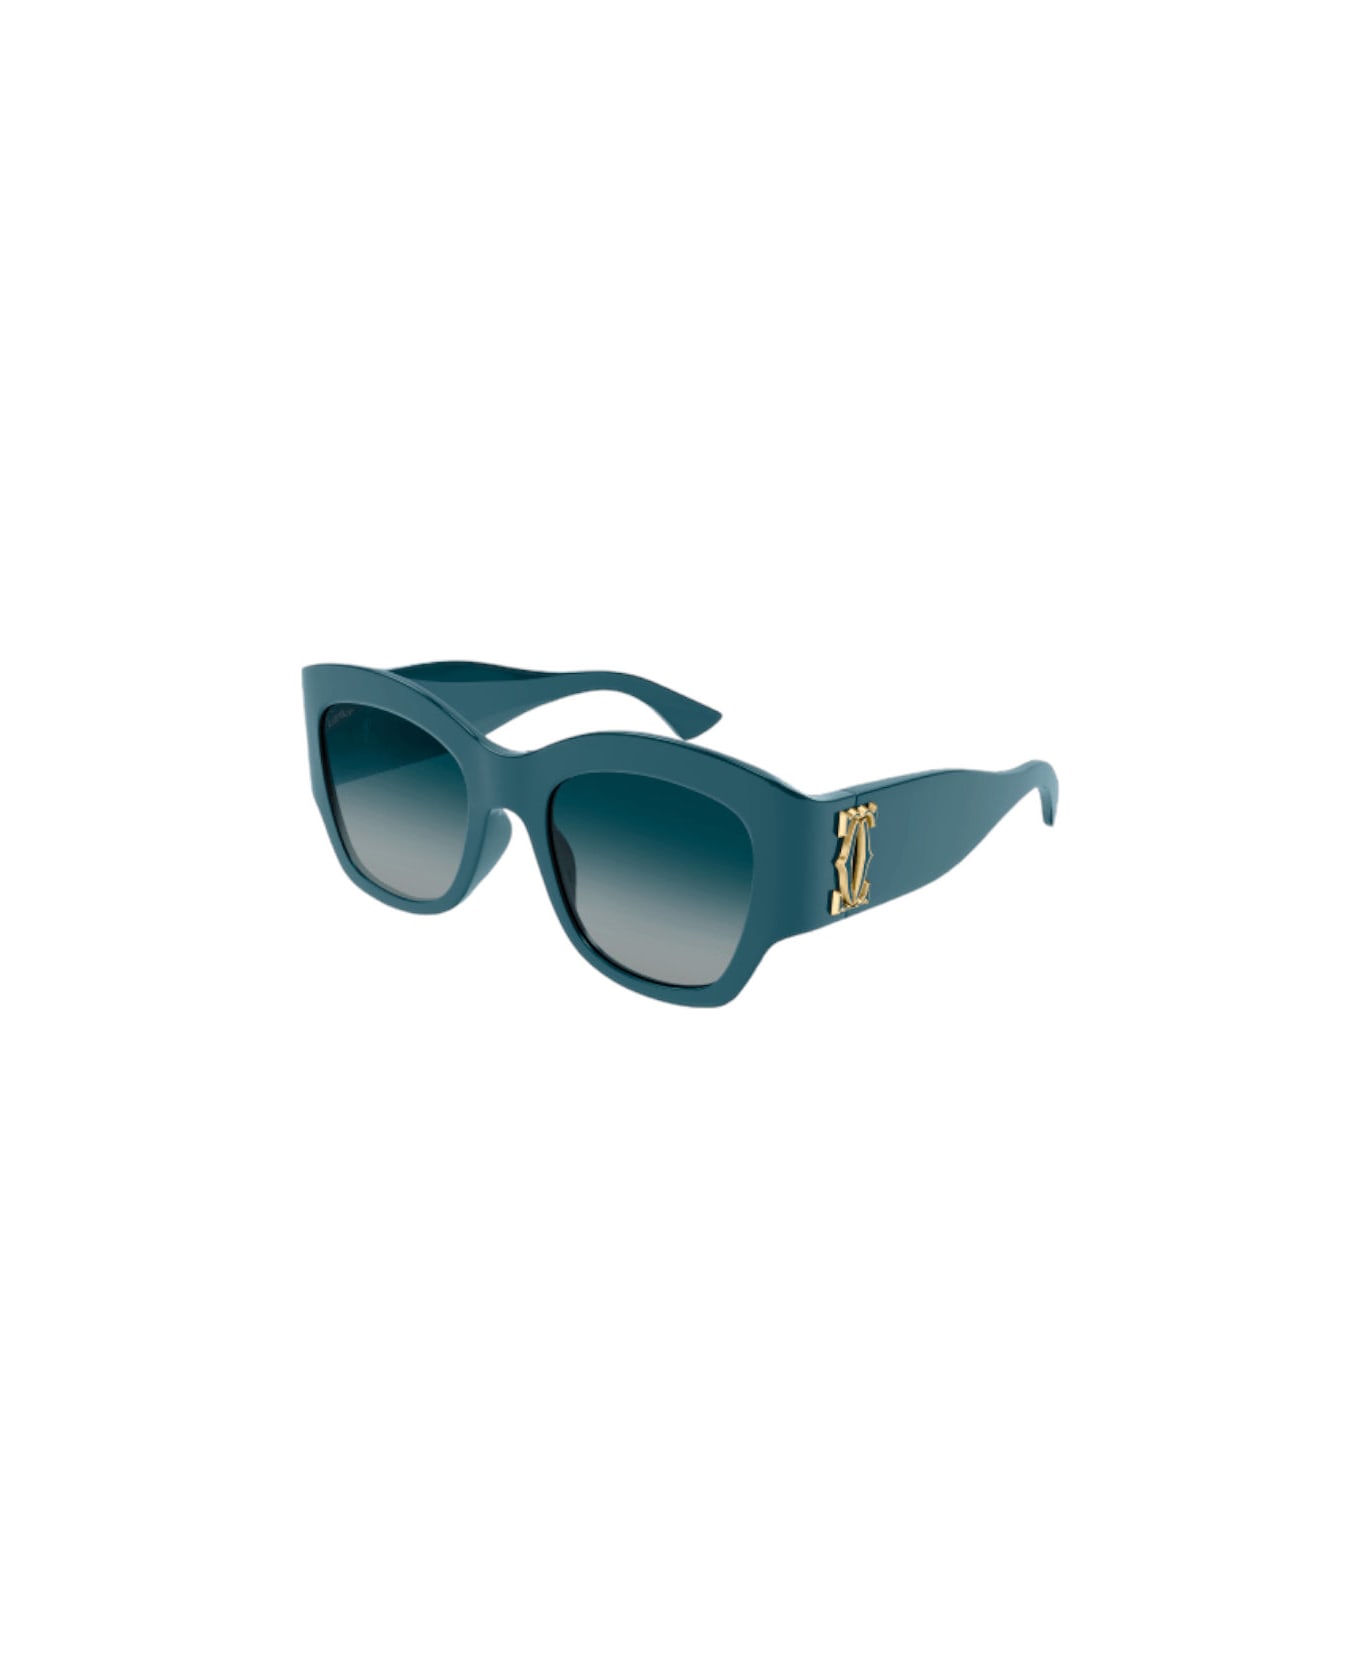 Cartier Eyewear Ct 0304 Sunglasses サングラス